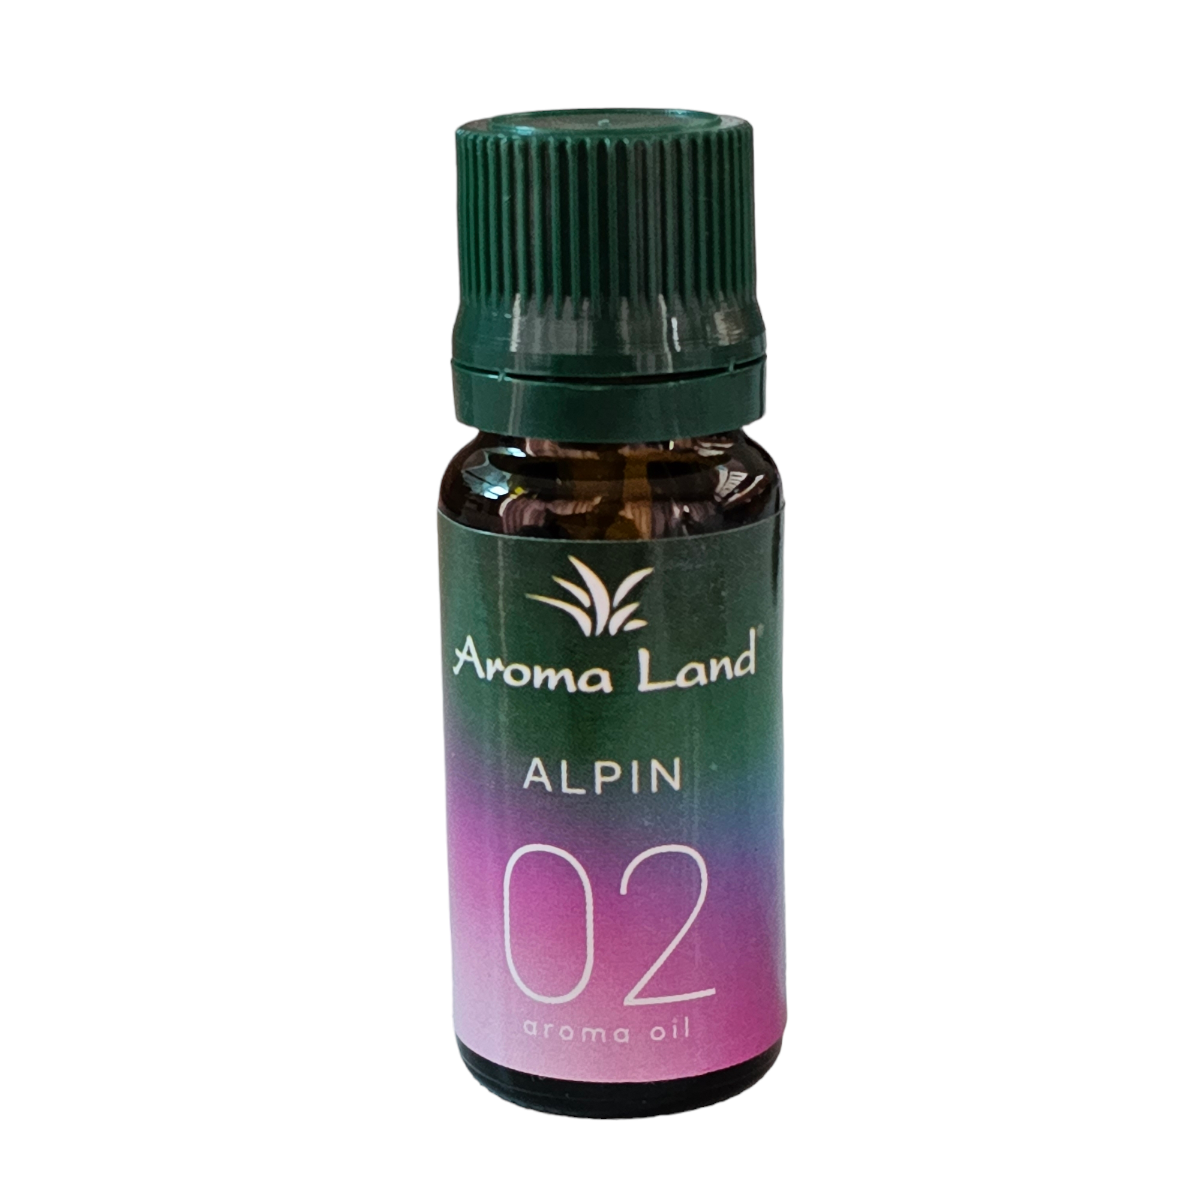 Ulei parfumat pentru aromoterapie Alpin 02